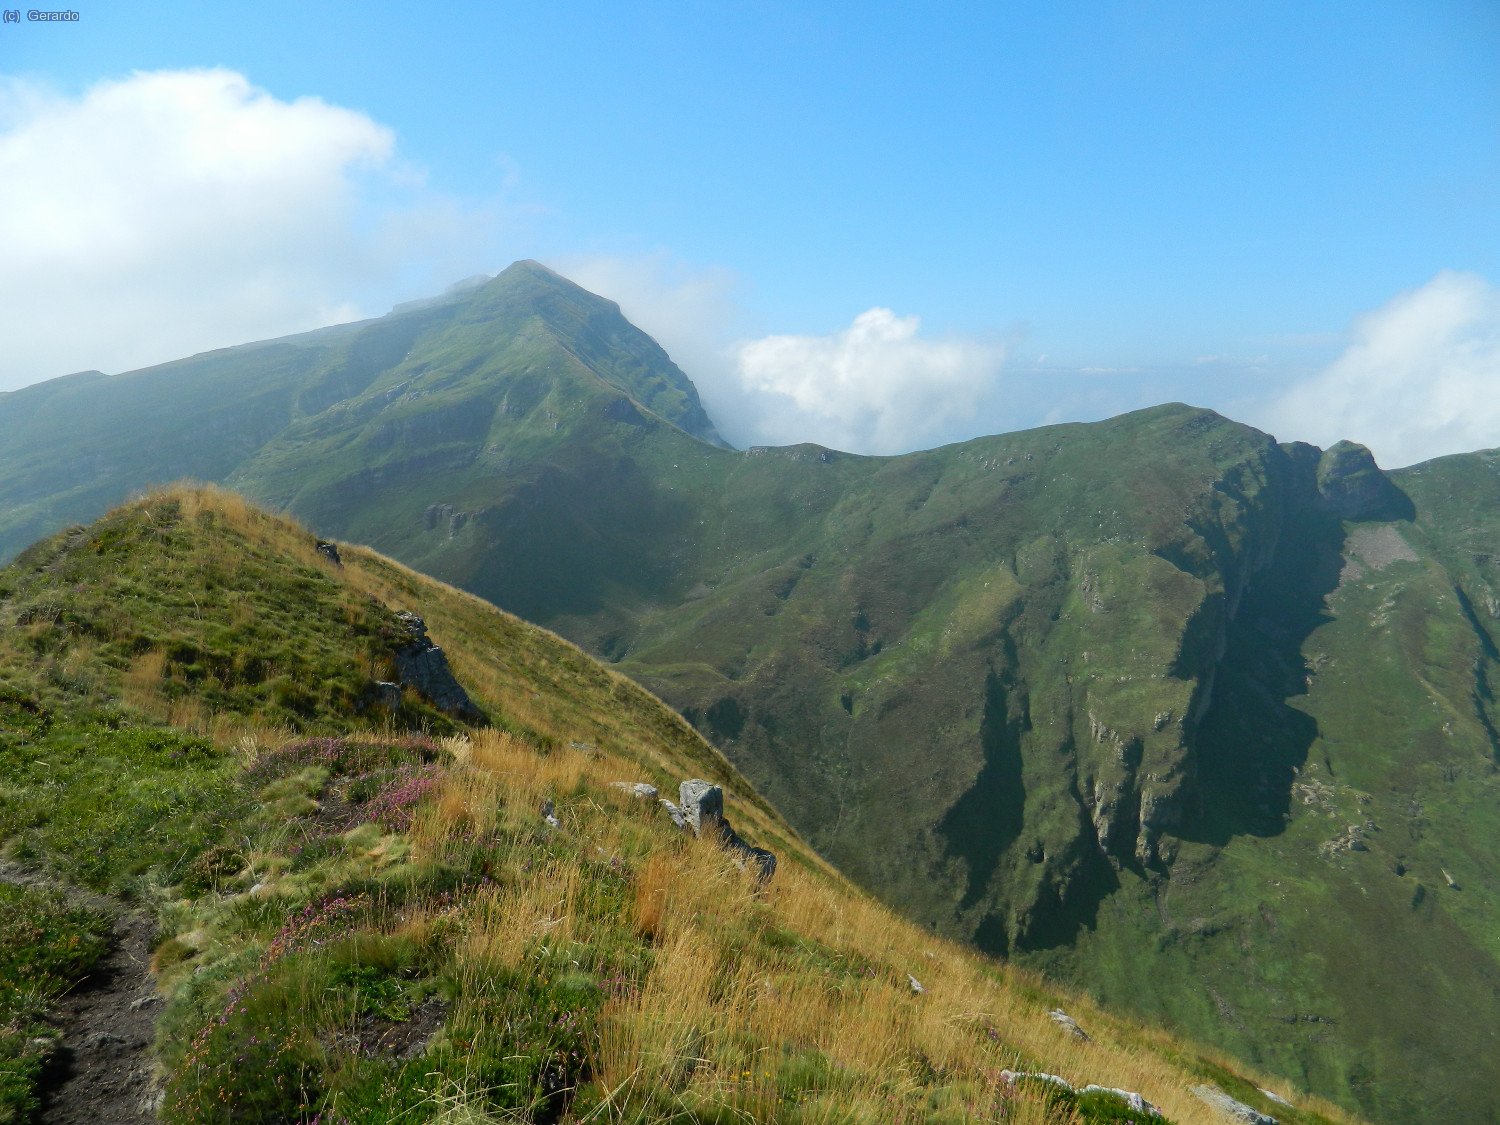 La cima del Pico de La Miel con el Valnera al fondo.